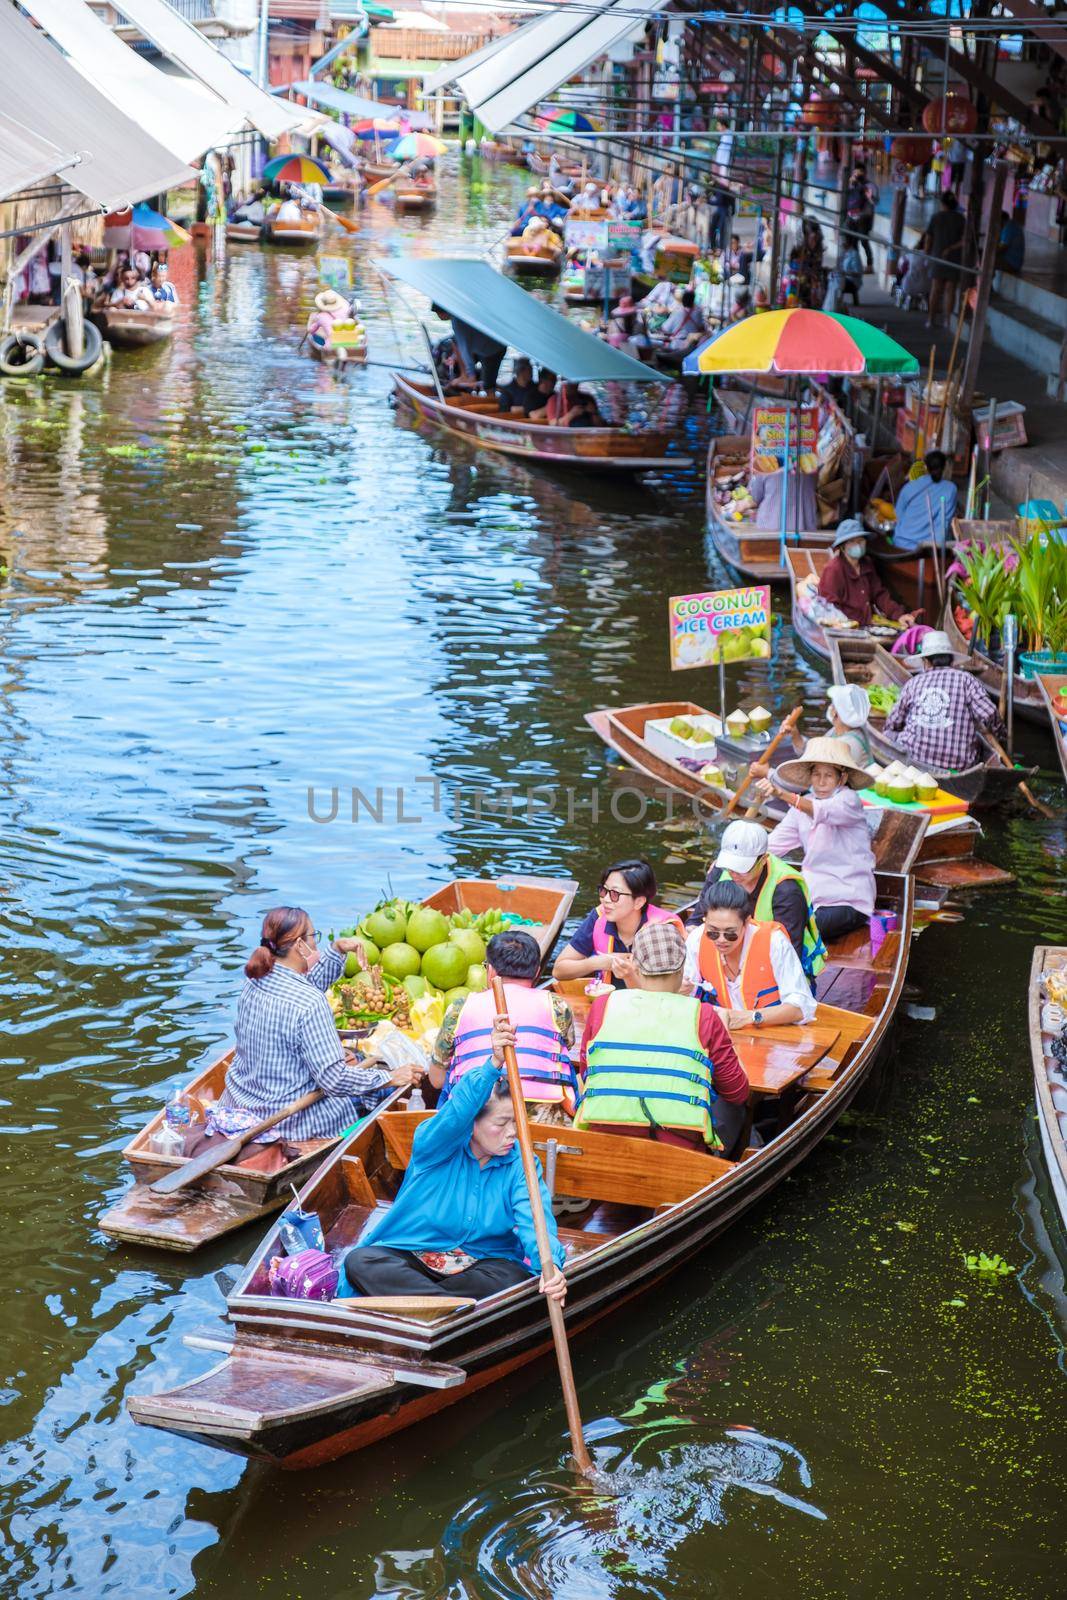 People at Damnoen saduak floating market, Bangkok Thailand. colorful floating market in Thailand